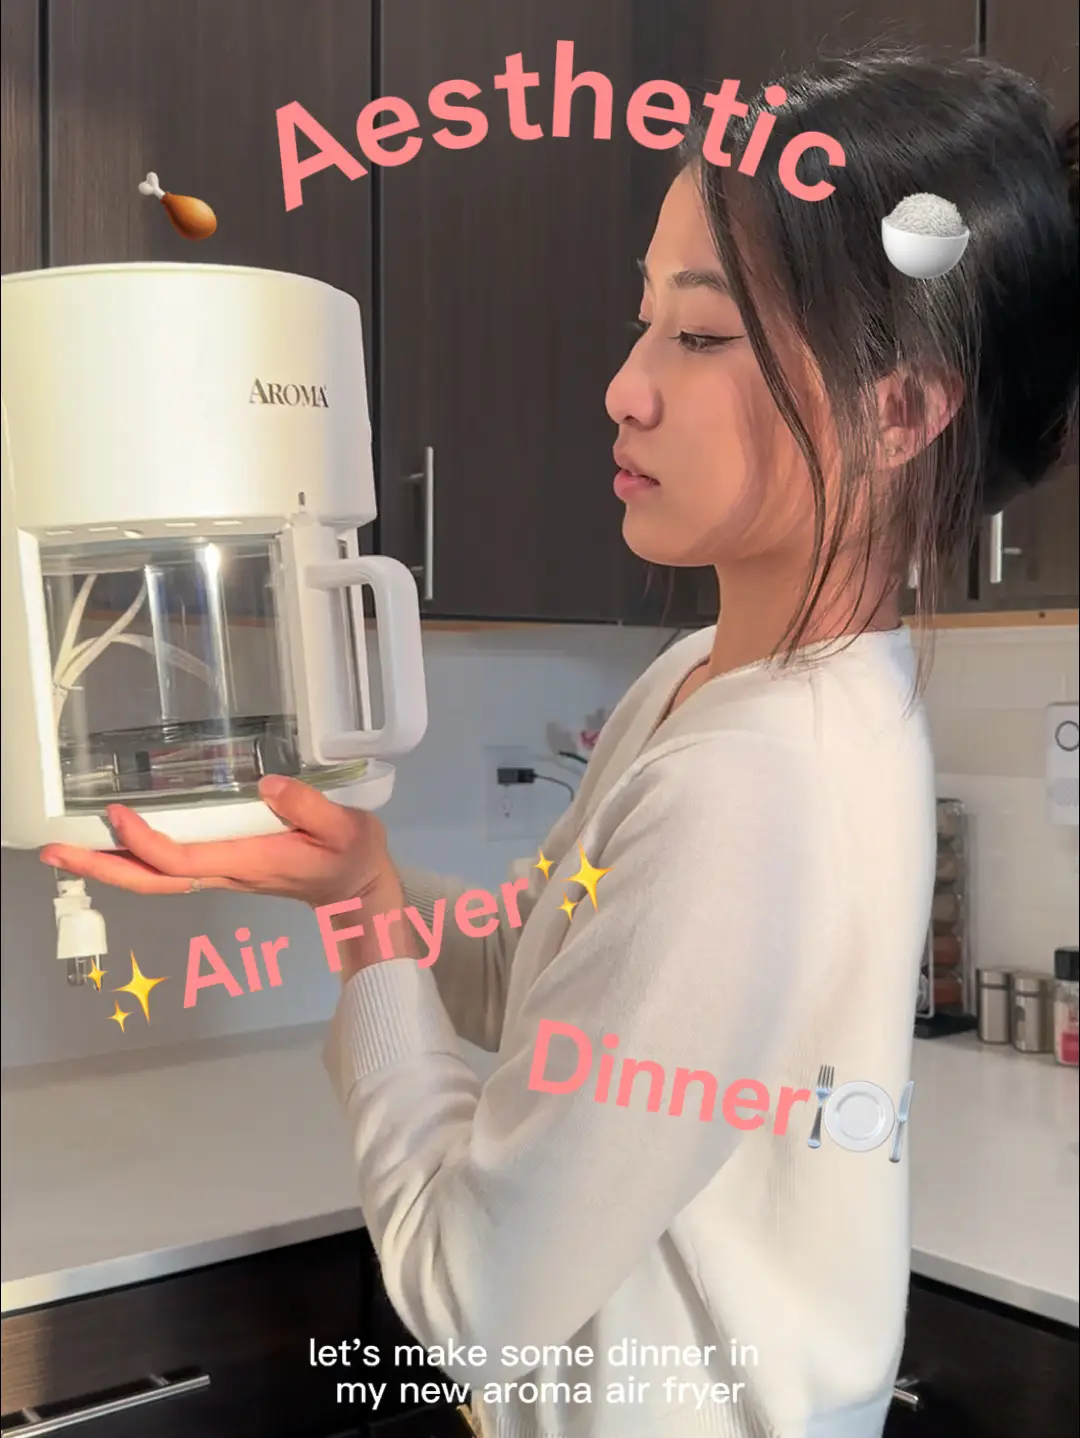 Cosori Air Fryer Pro (100 recetas), personalizable 10 presets